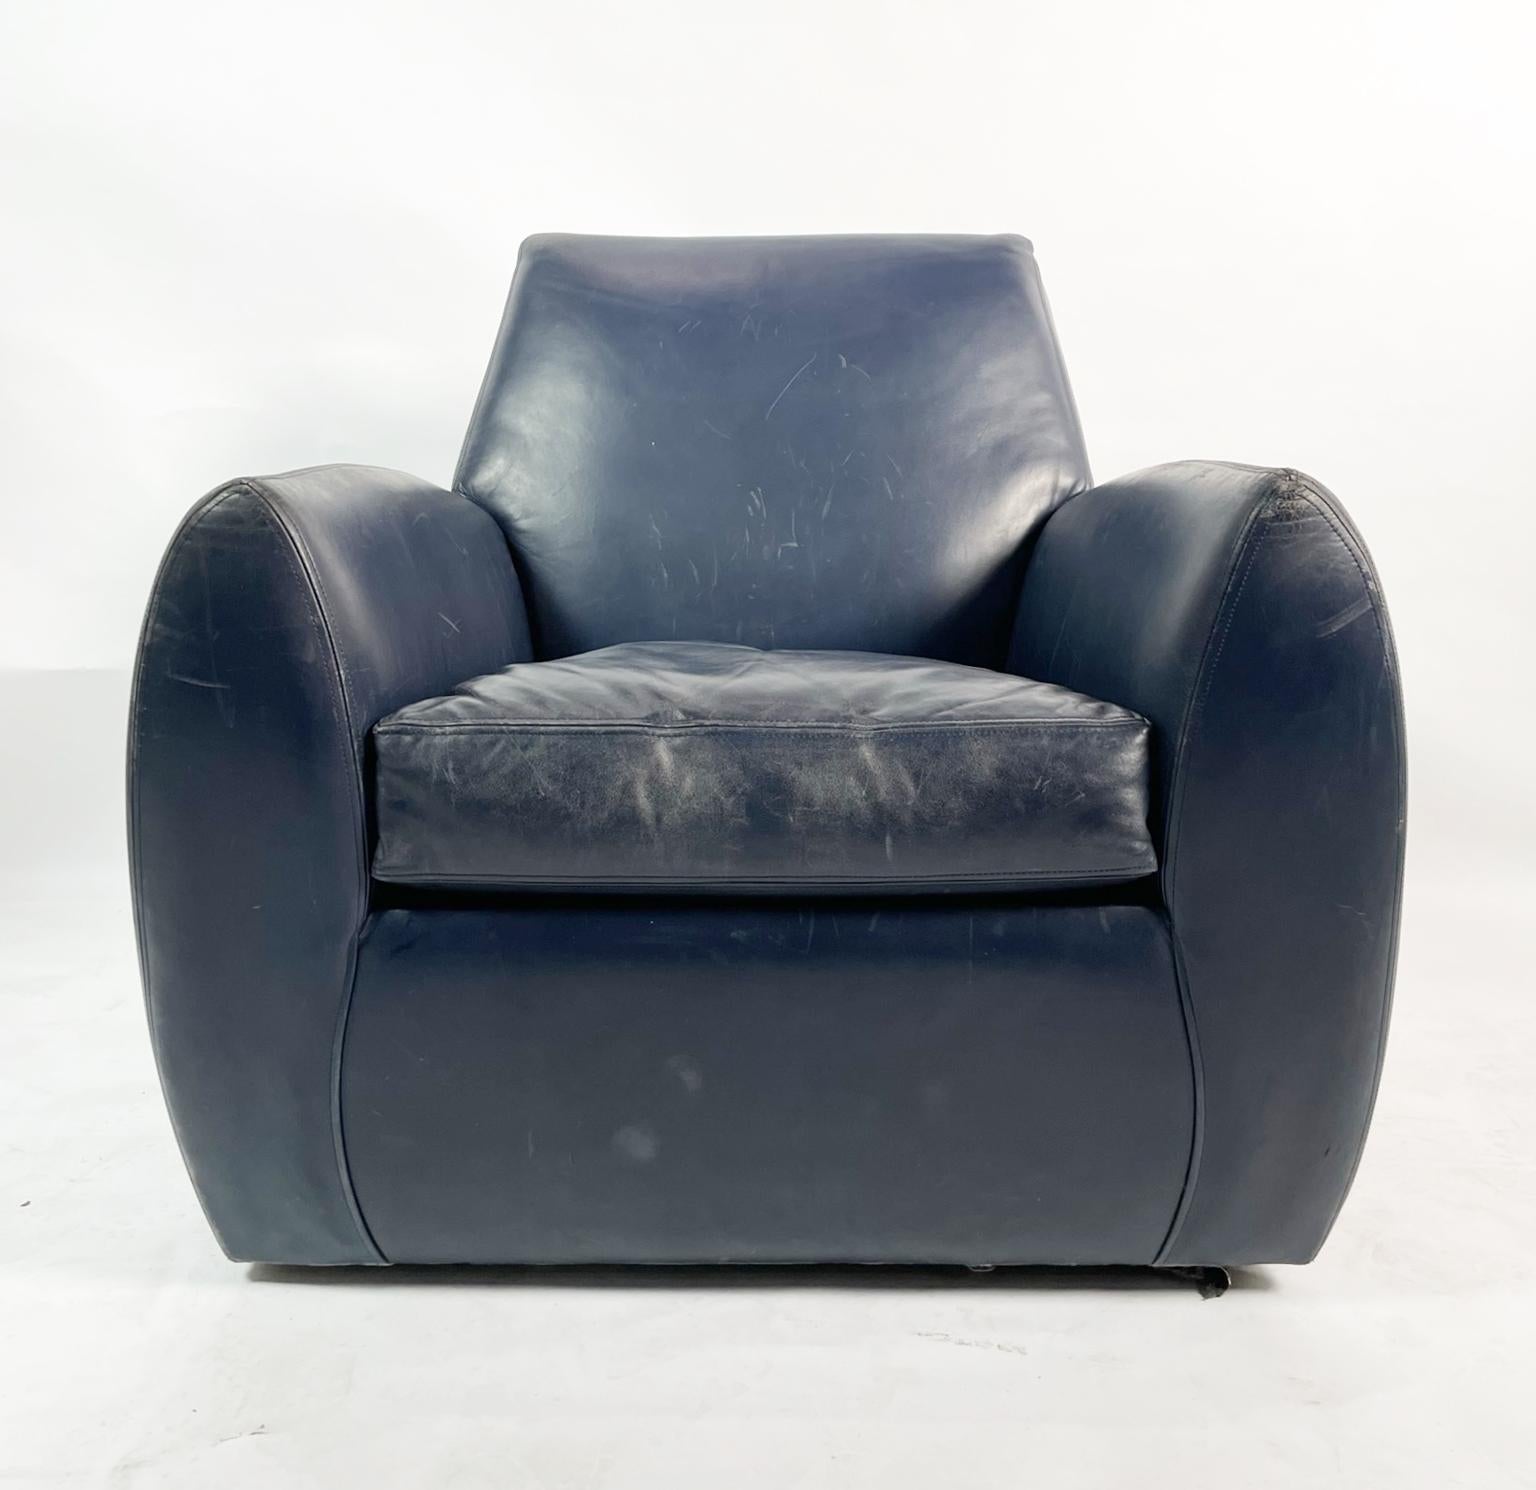 Voici la chaise Vintage Swivel Arm Chair de Dakota Jackson - un meuble intemporel qui respire l'élégance et la sophistication. Fabriqué avec le plus grand soin et l'attention portée aux détails, ce superbe fauteuil est le complément idéal de toute